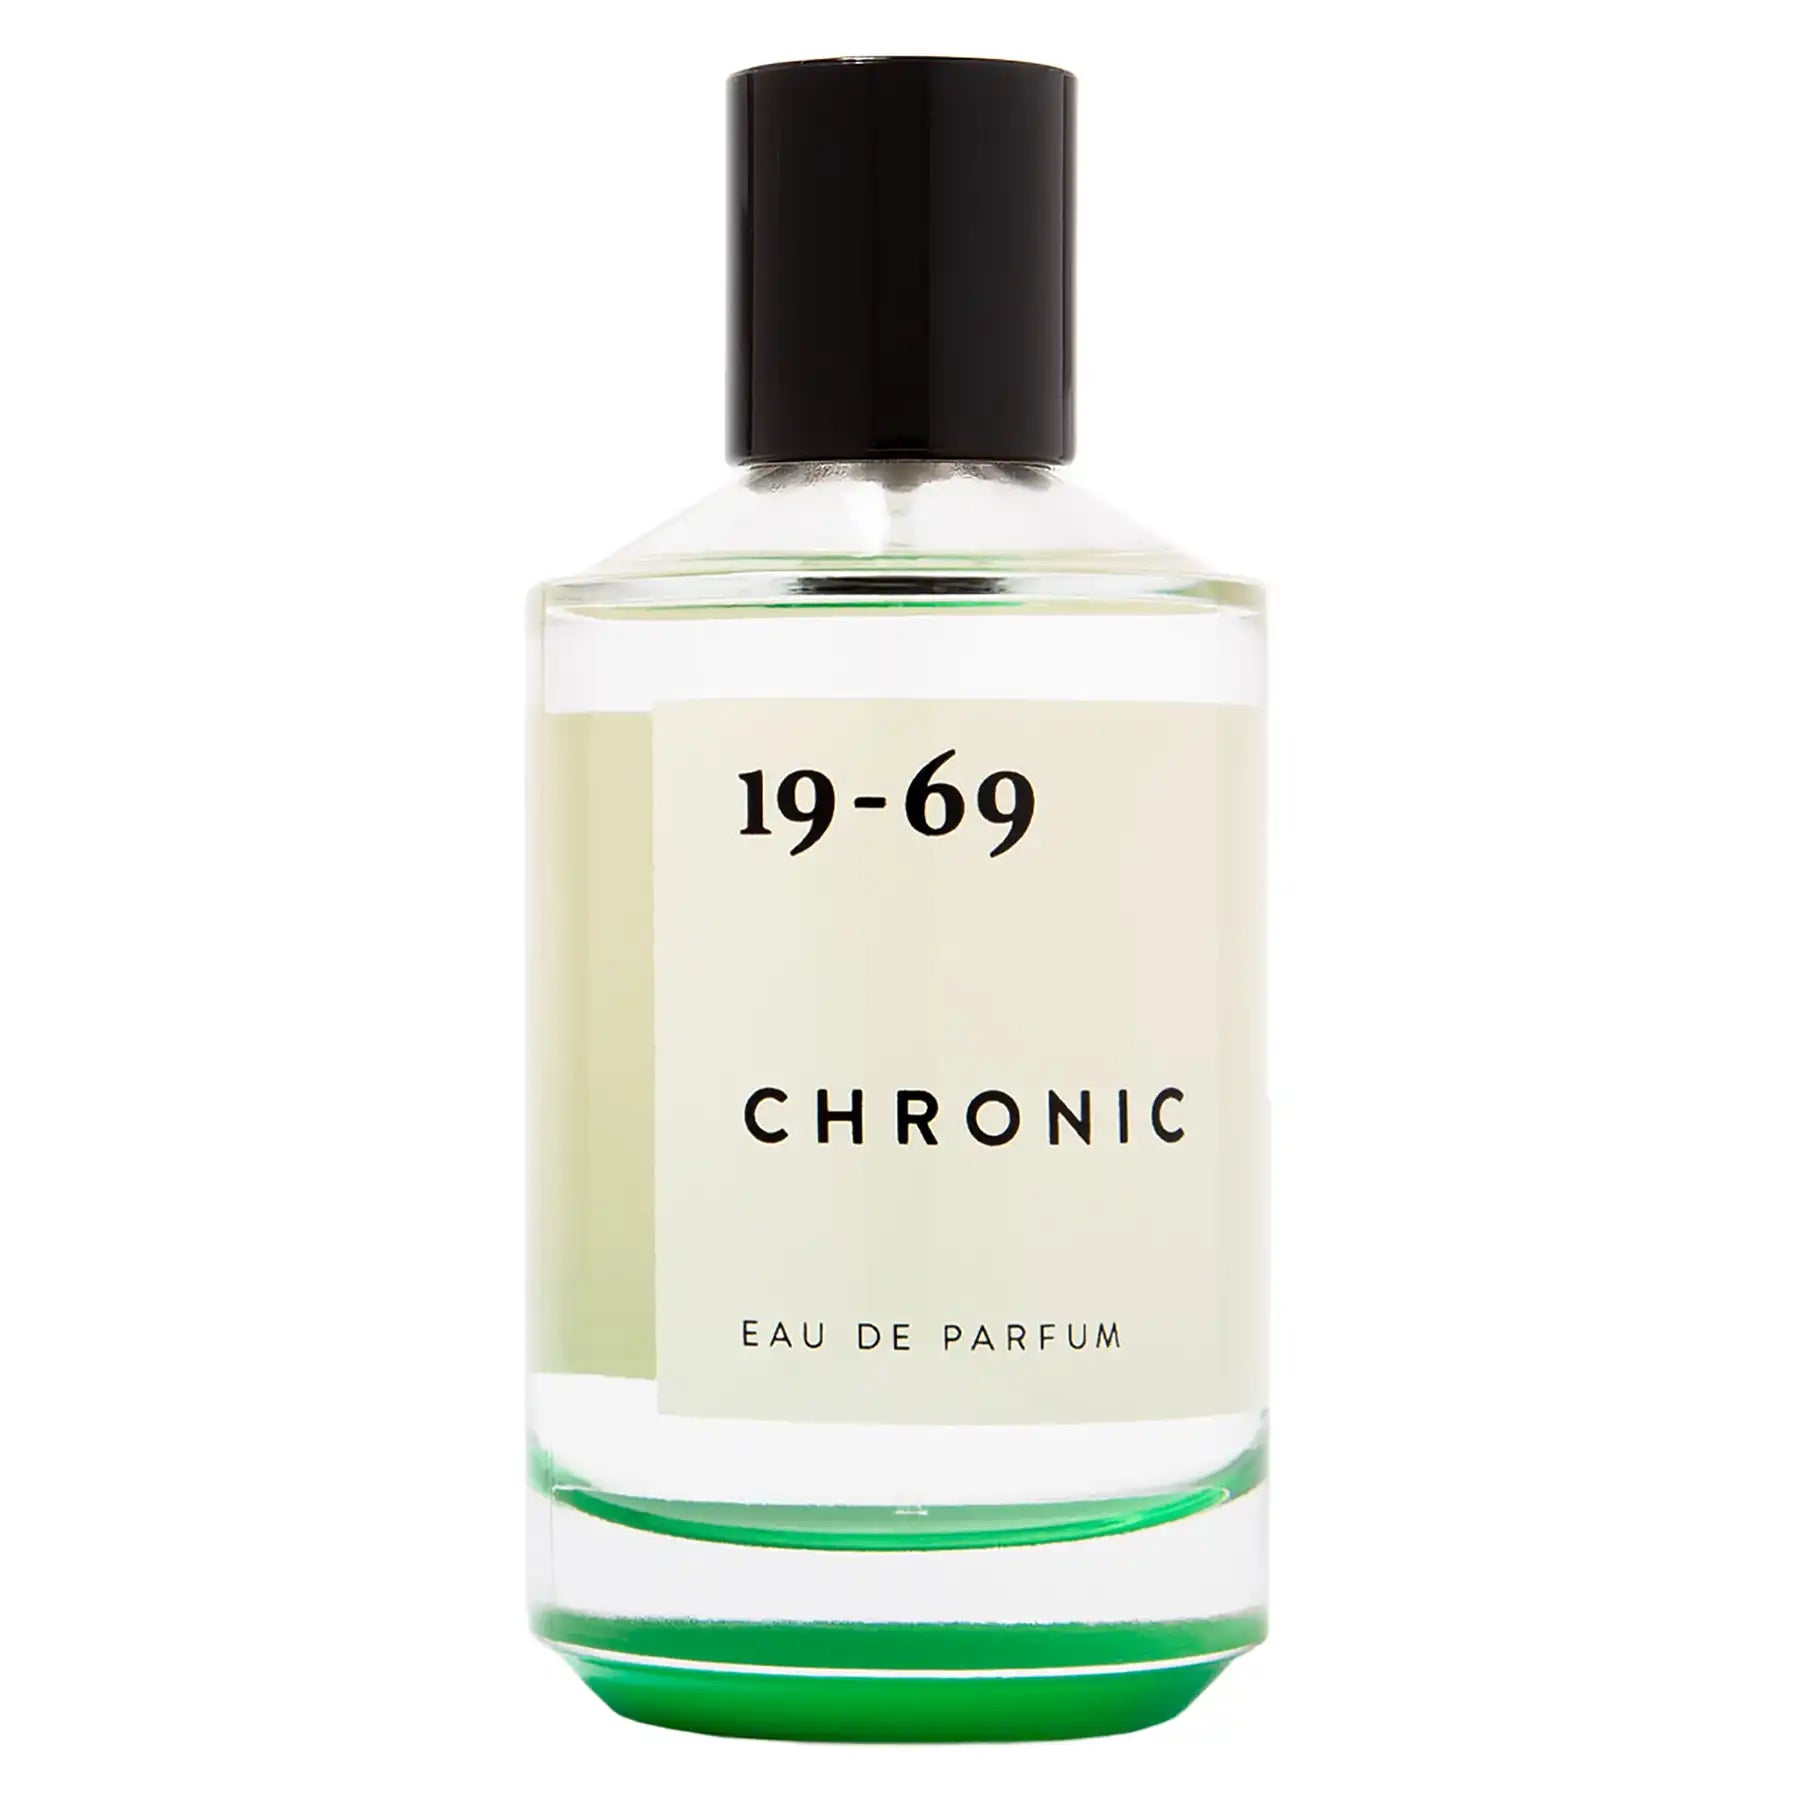 19-69 Chronic Eau de Parfum